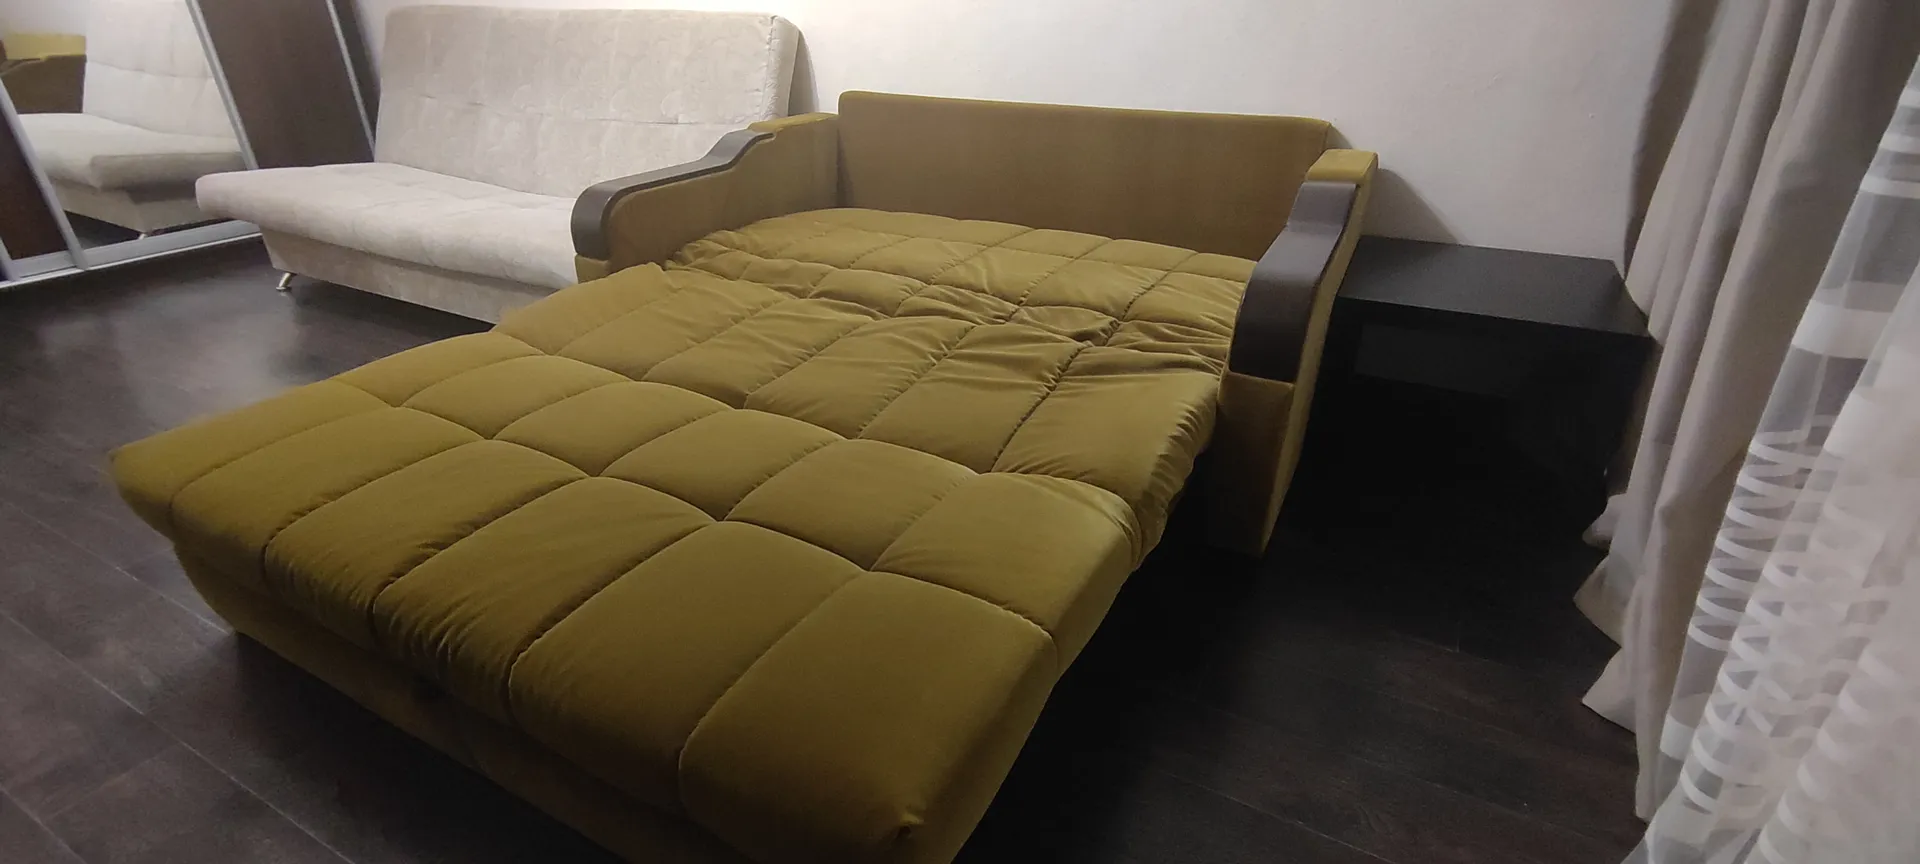 Двухместный диван, спальное место 160 см